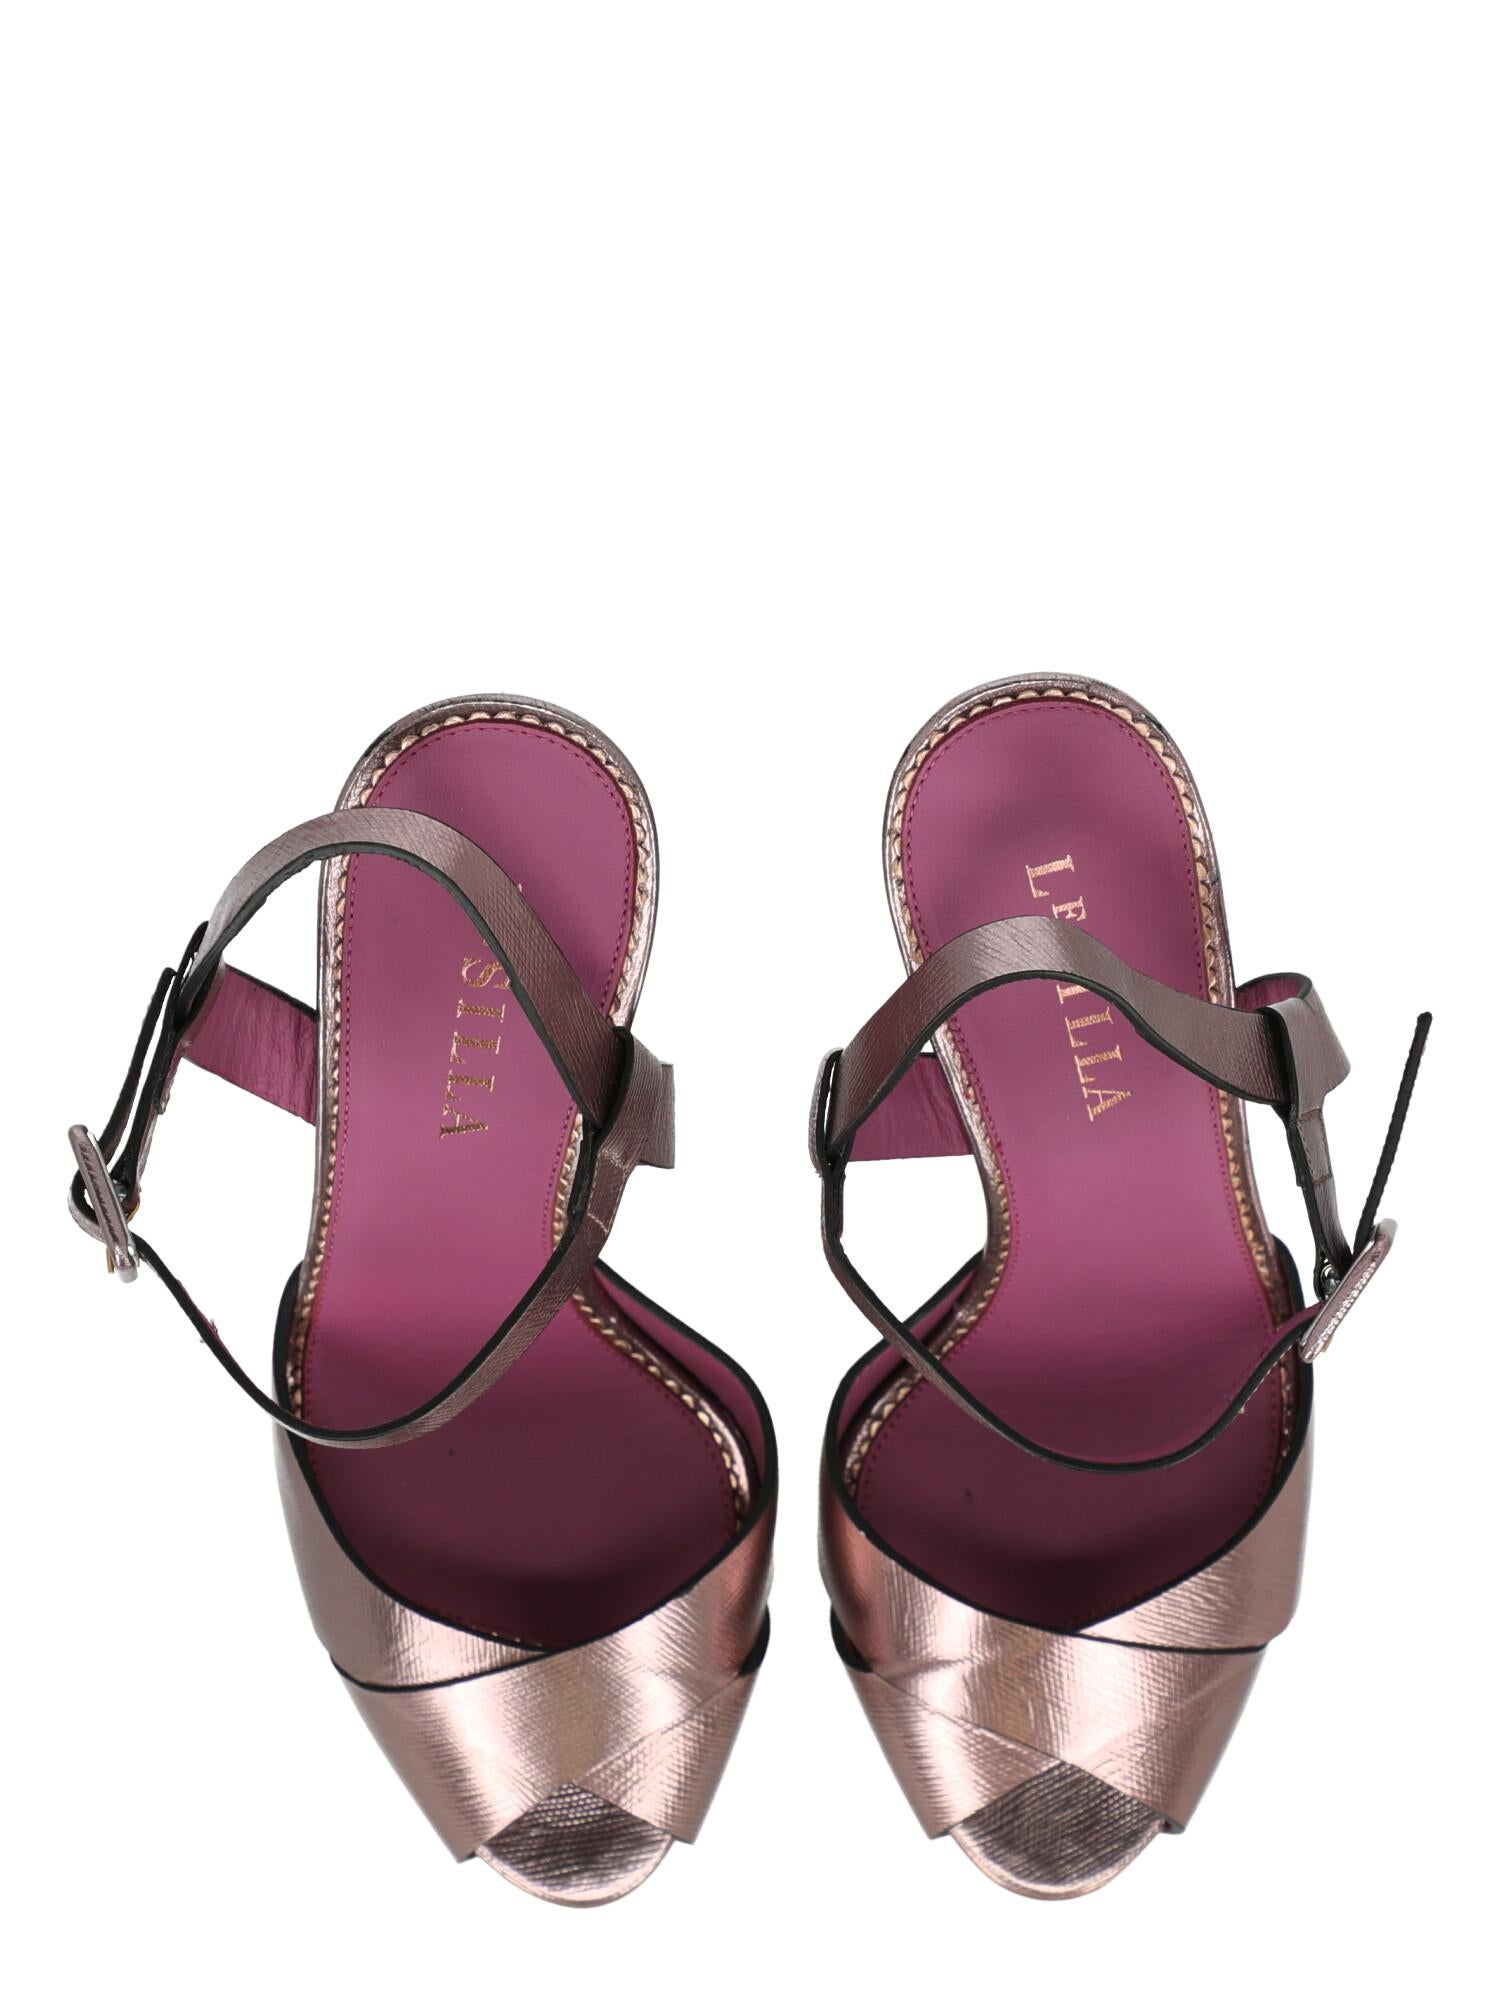 Le Silla Women  Sandals Purple Leather IT 37.5 For Sale 1